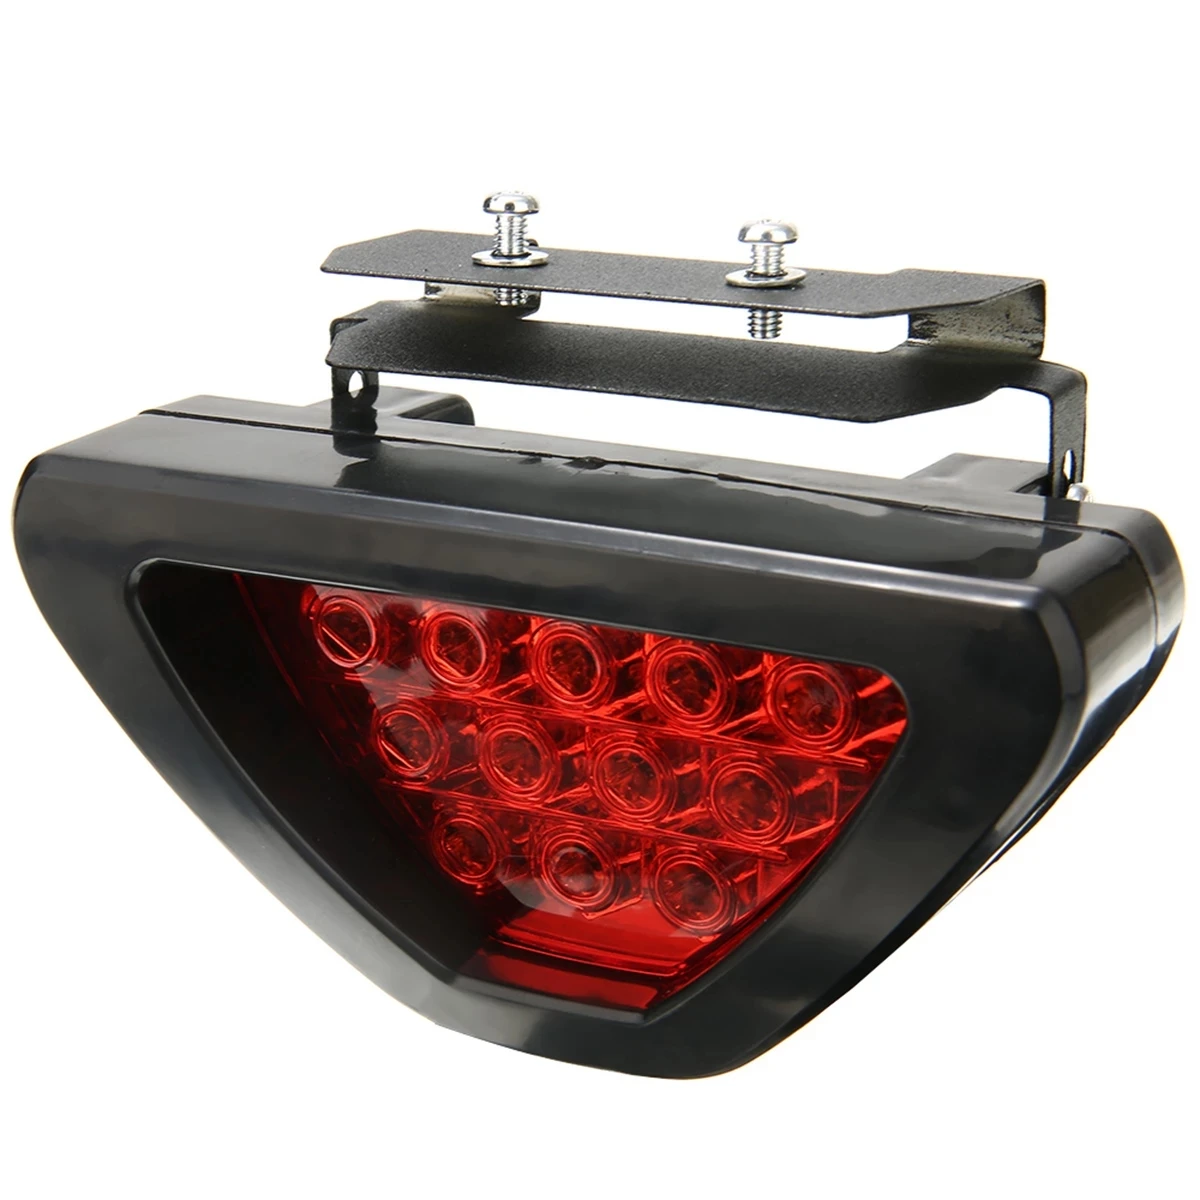 

Brake Brake Lights Universal F1 Style 12 LED Red Rear Tail Third Brake Stop Safety Signal Lamp Light